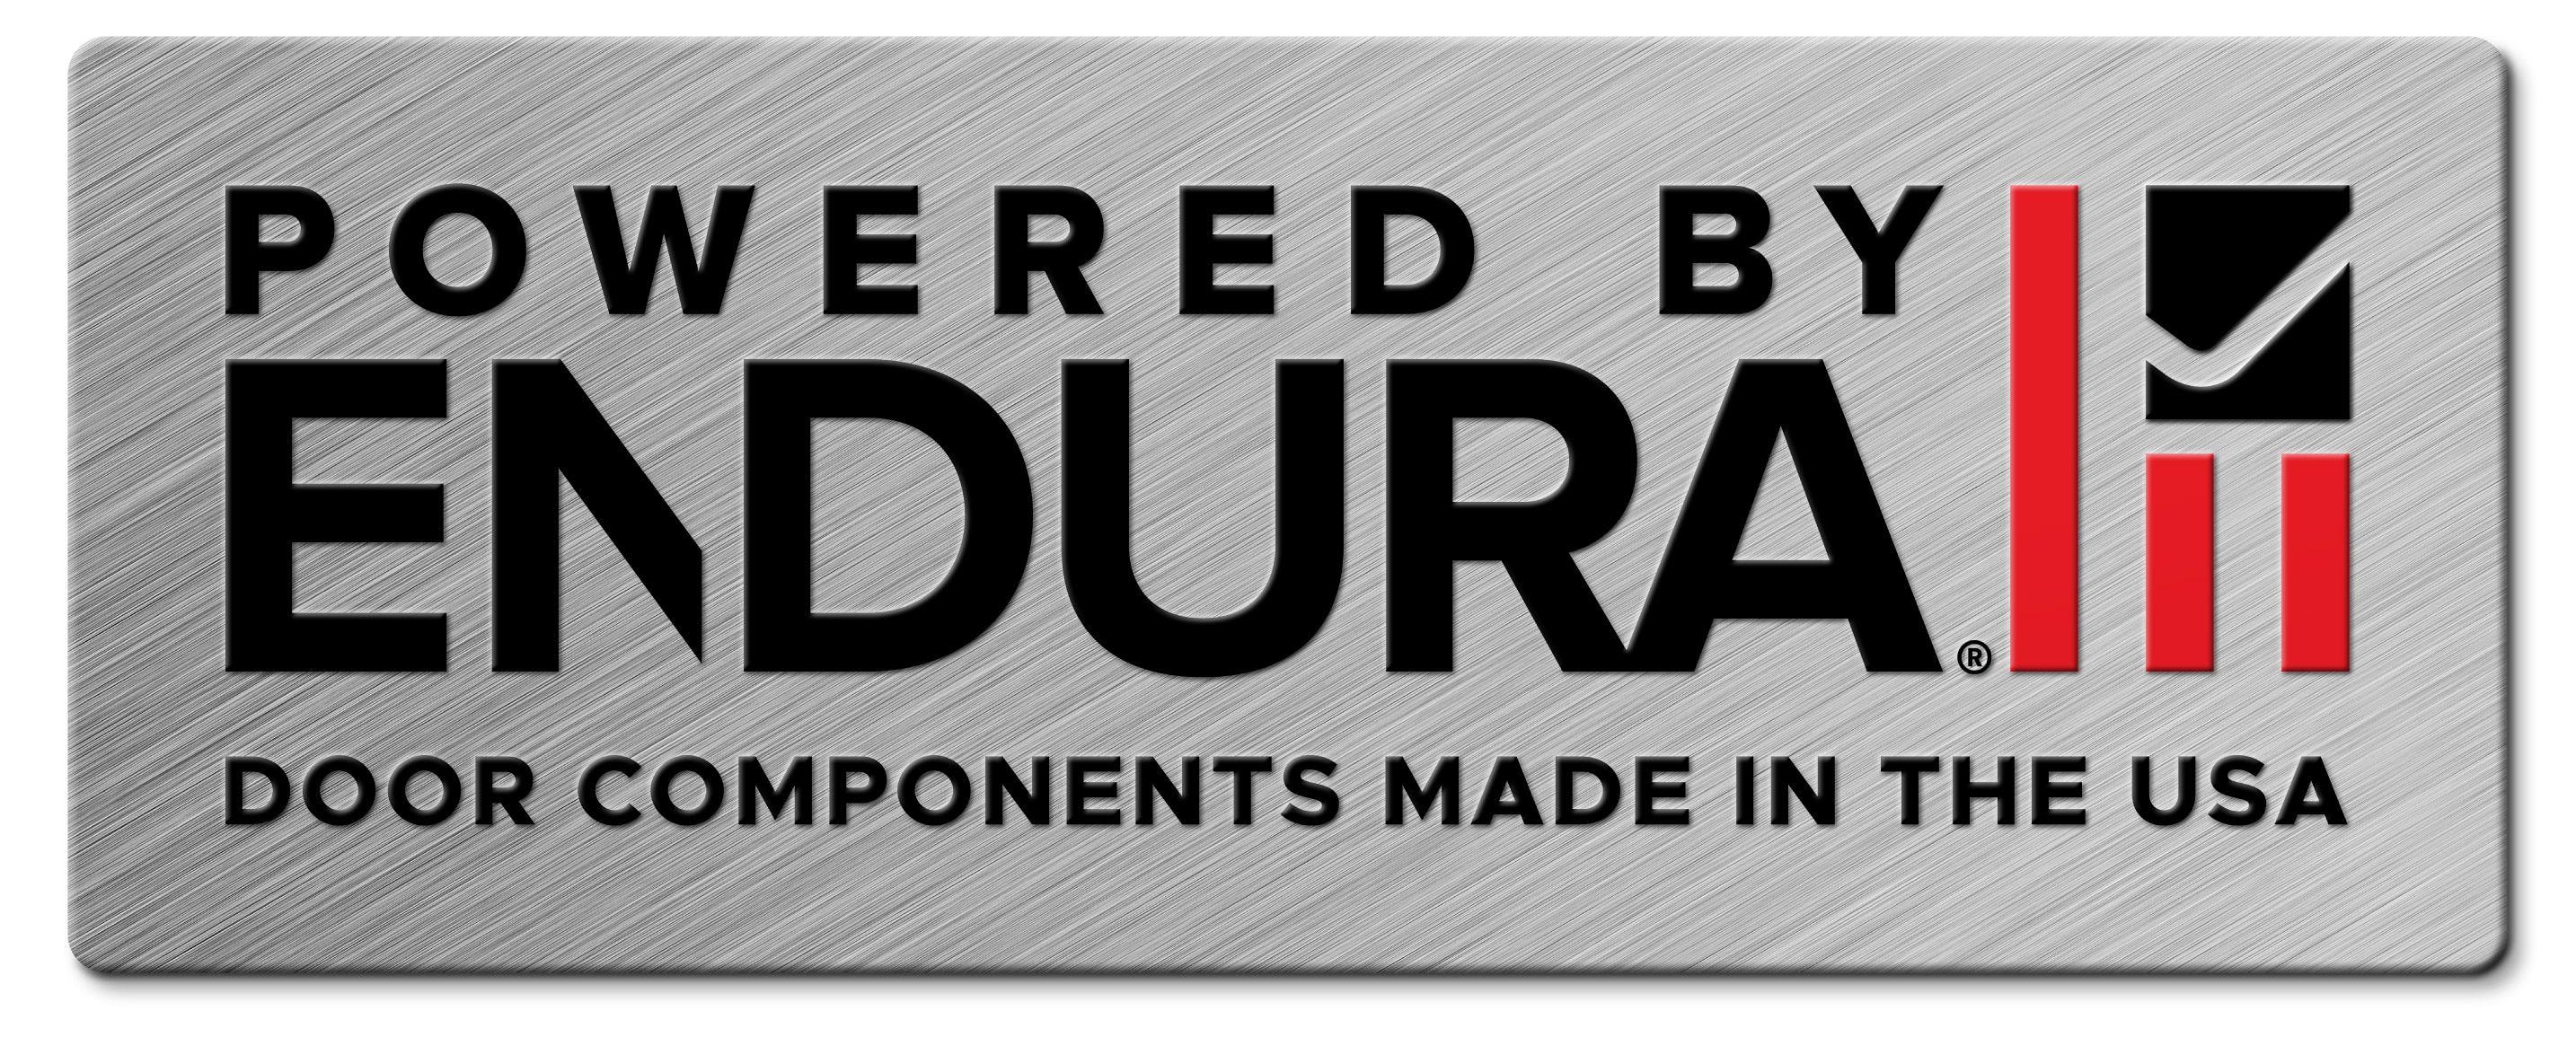 Endura Logo - Endura Door Component Systems | Door Sills | Exterior Door Components